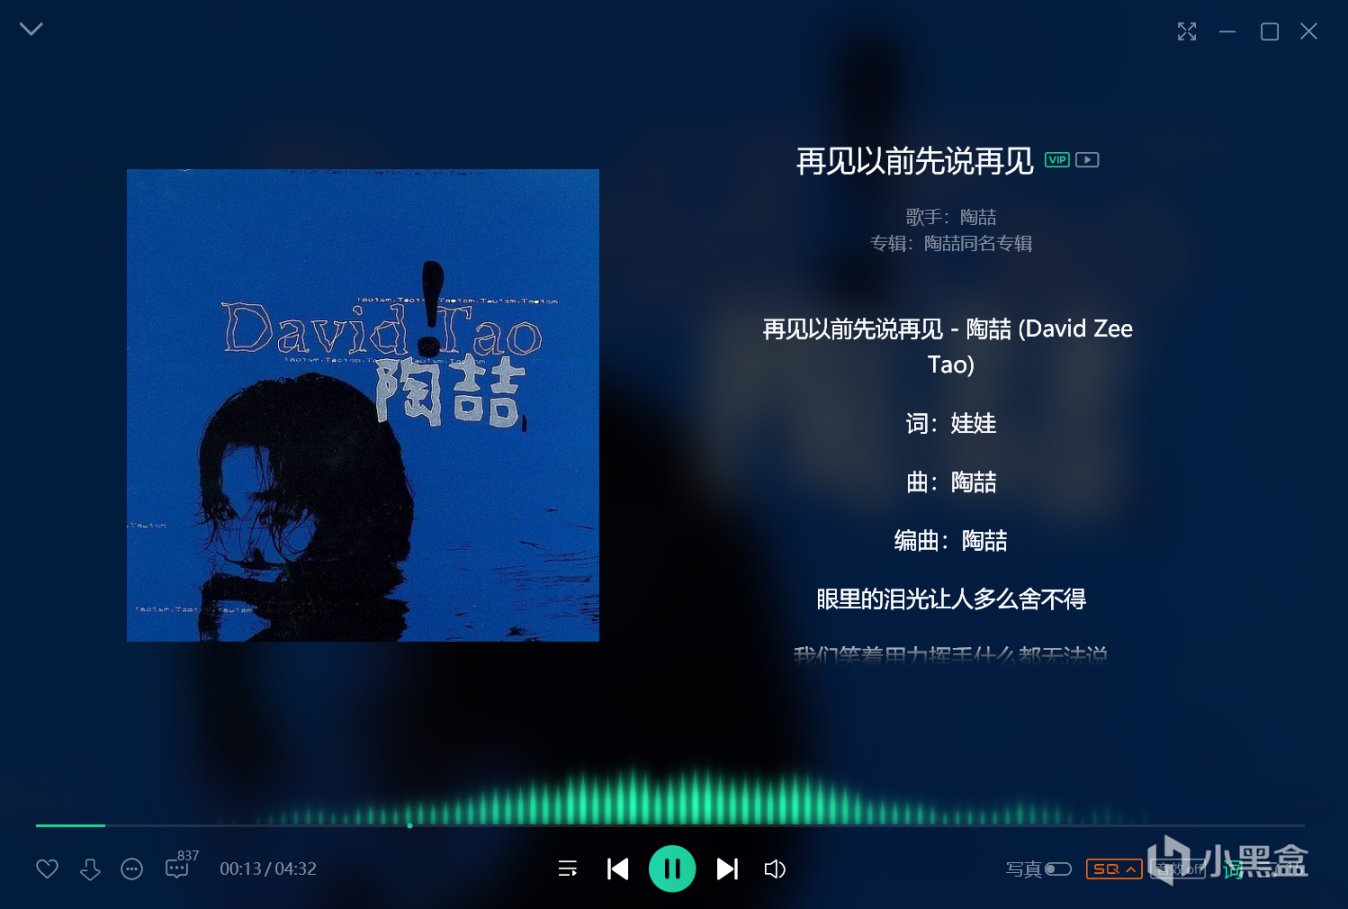 【影視動漫】你有沒有聽過這張神專?David Tao 華語樂壇不可錯過的神級專輯-第13張